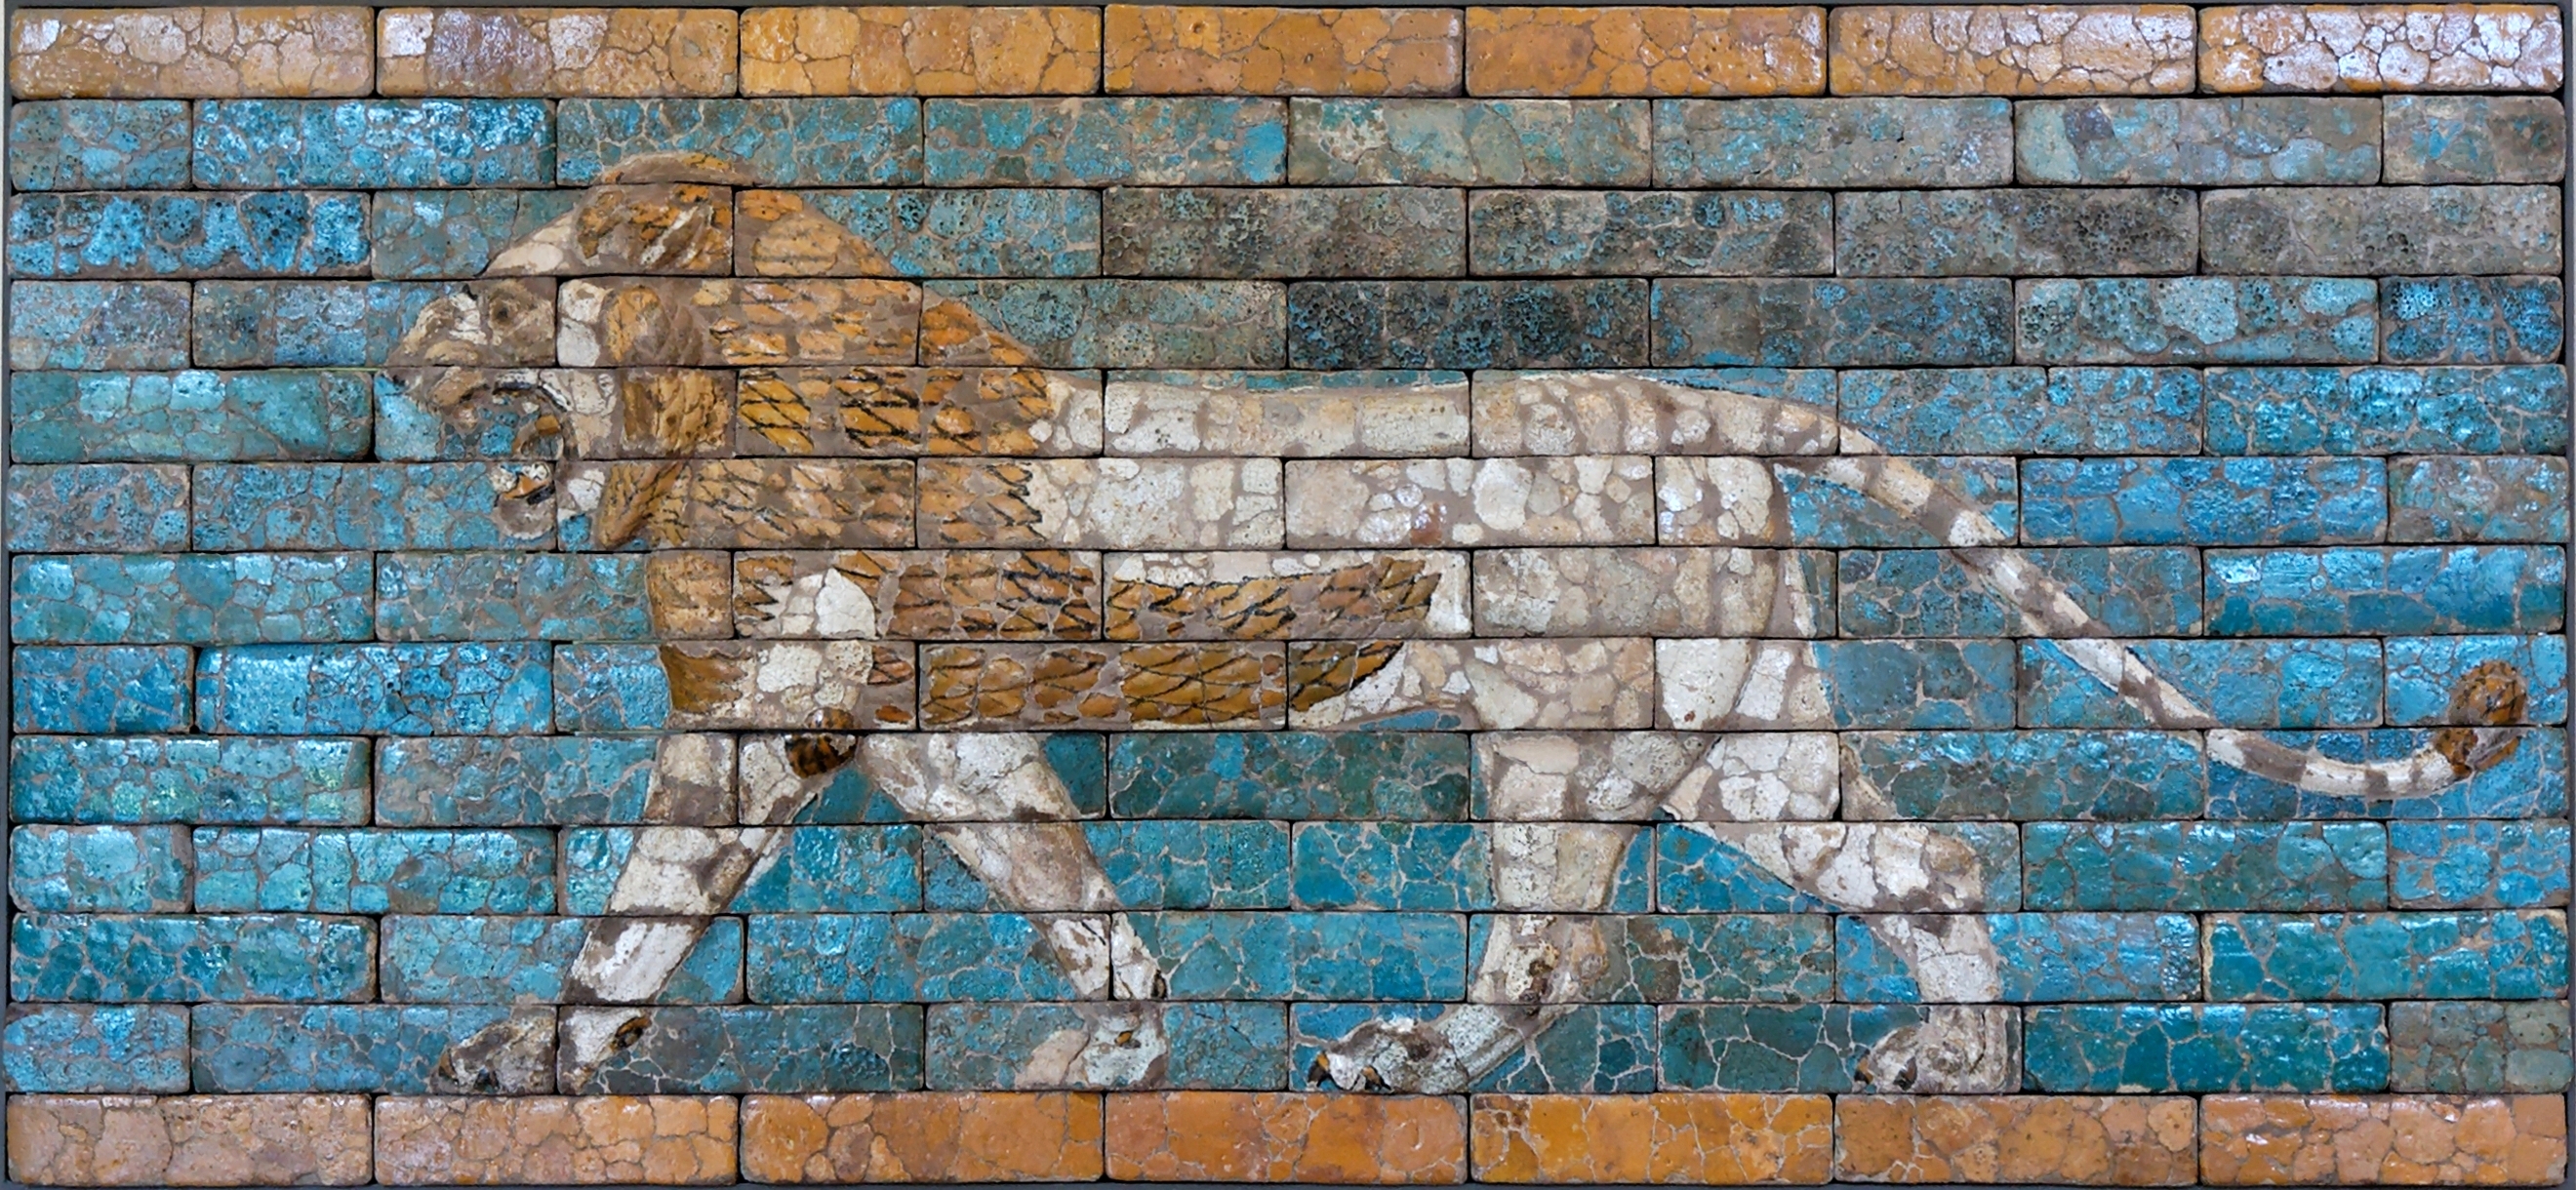 行走的狮子 by 未知艺术家  - 604 BC - 562 BC - 230 x 107 cm 艺术史博物馆